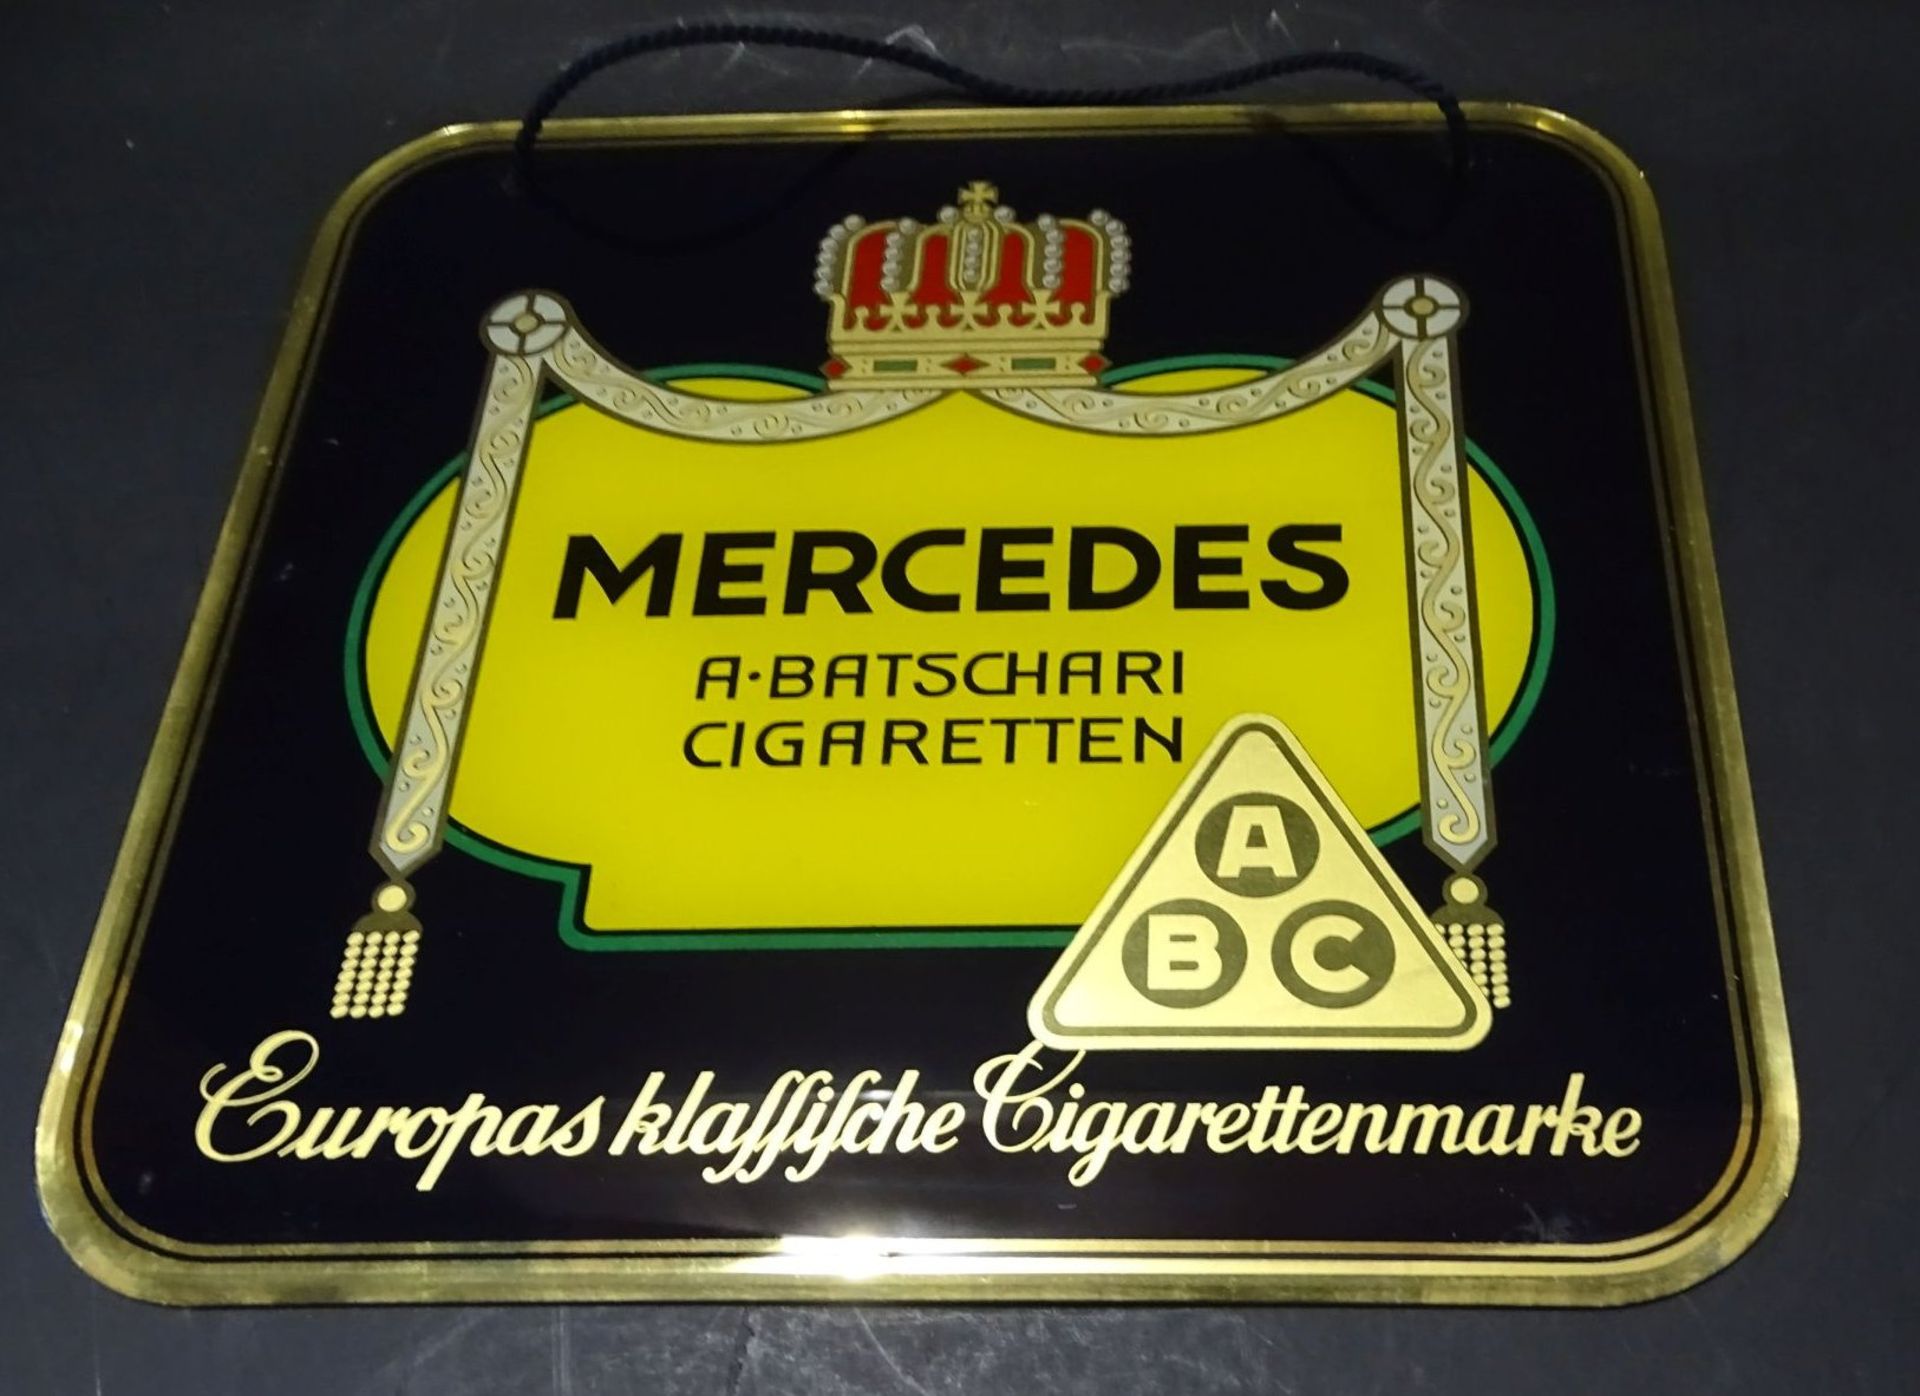 Glas-Werbeschild "Mercedes" Cigaretten, 30-40-er Jahre, 28x28 cm - Bild 2 aus 4